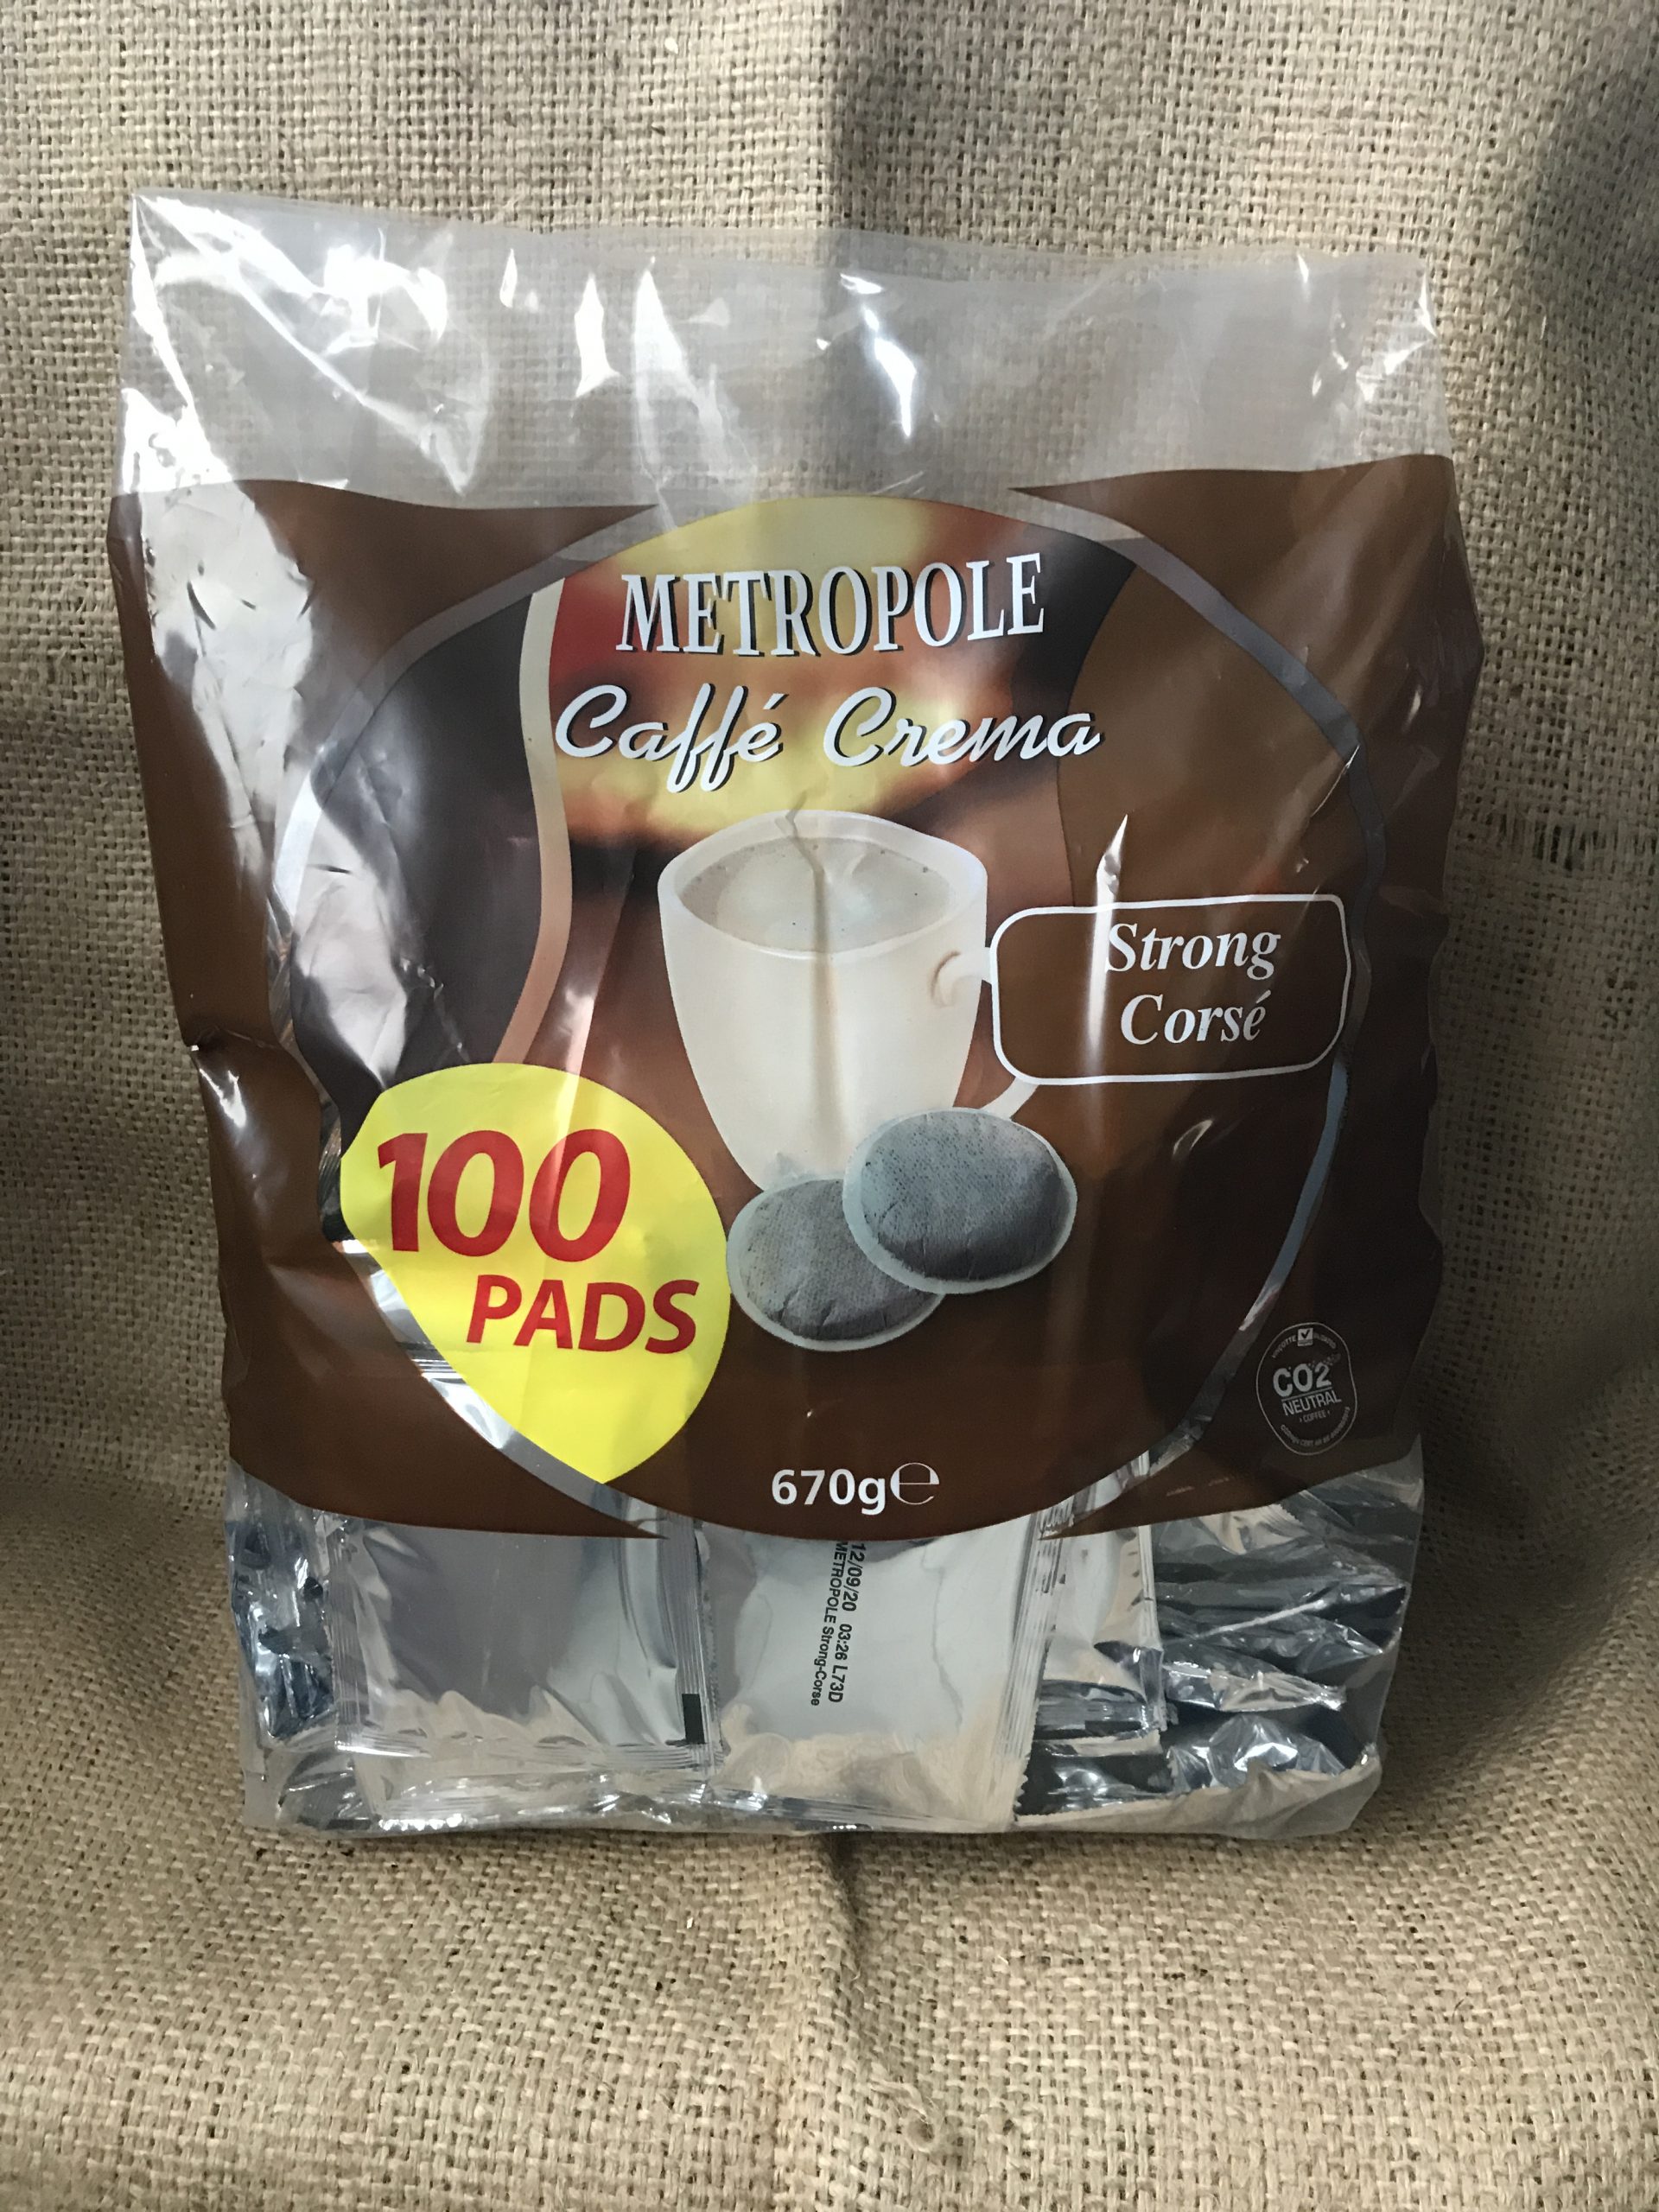 Dosettes de Café compatibles Senseo Corsé 100 pces emballées  individuellement